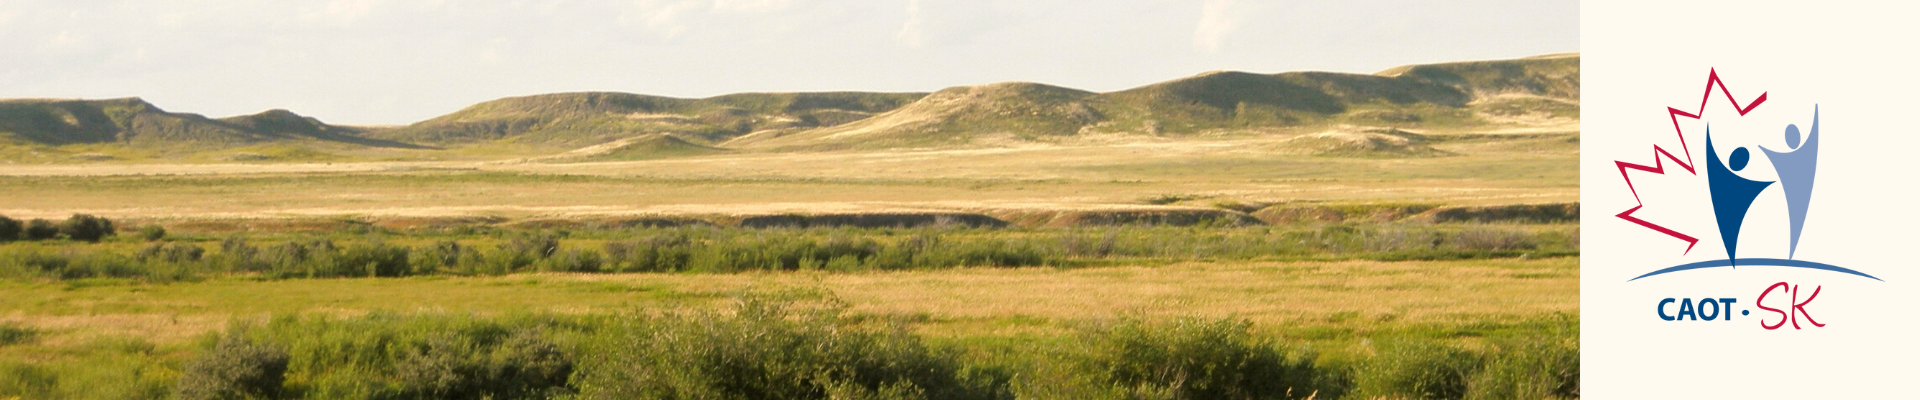 SK landscape image